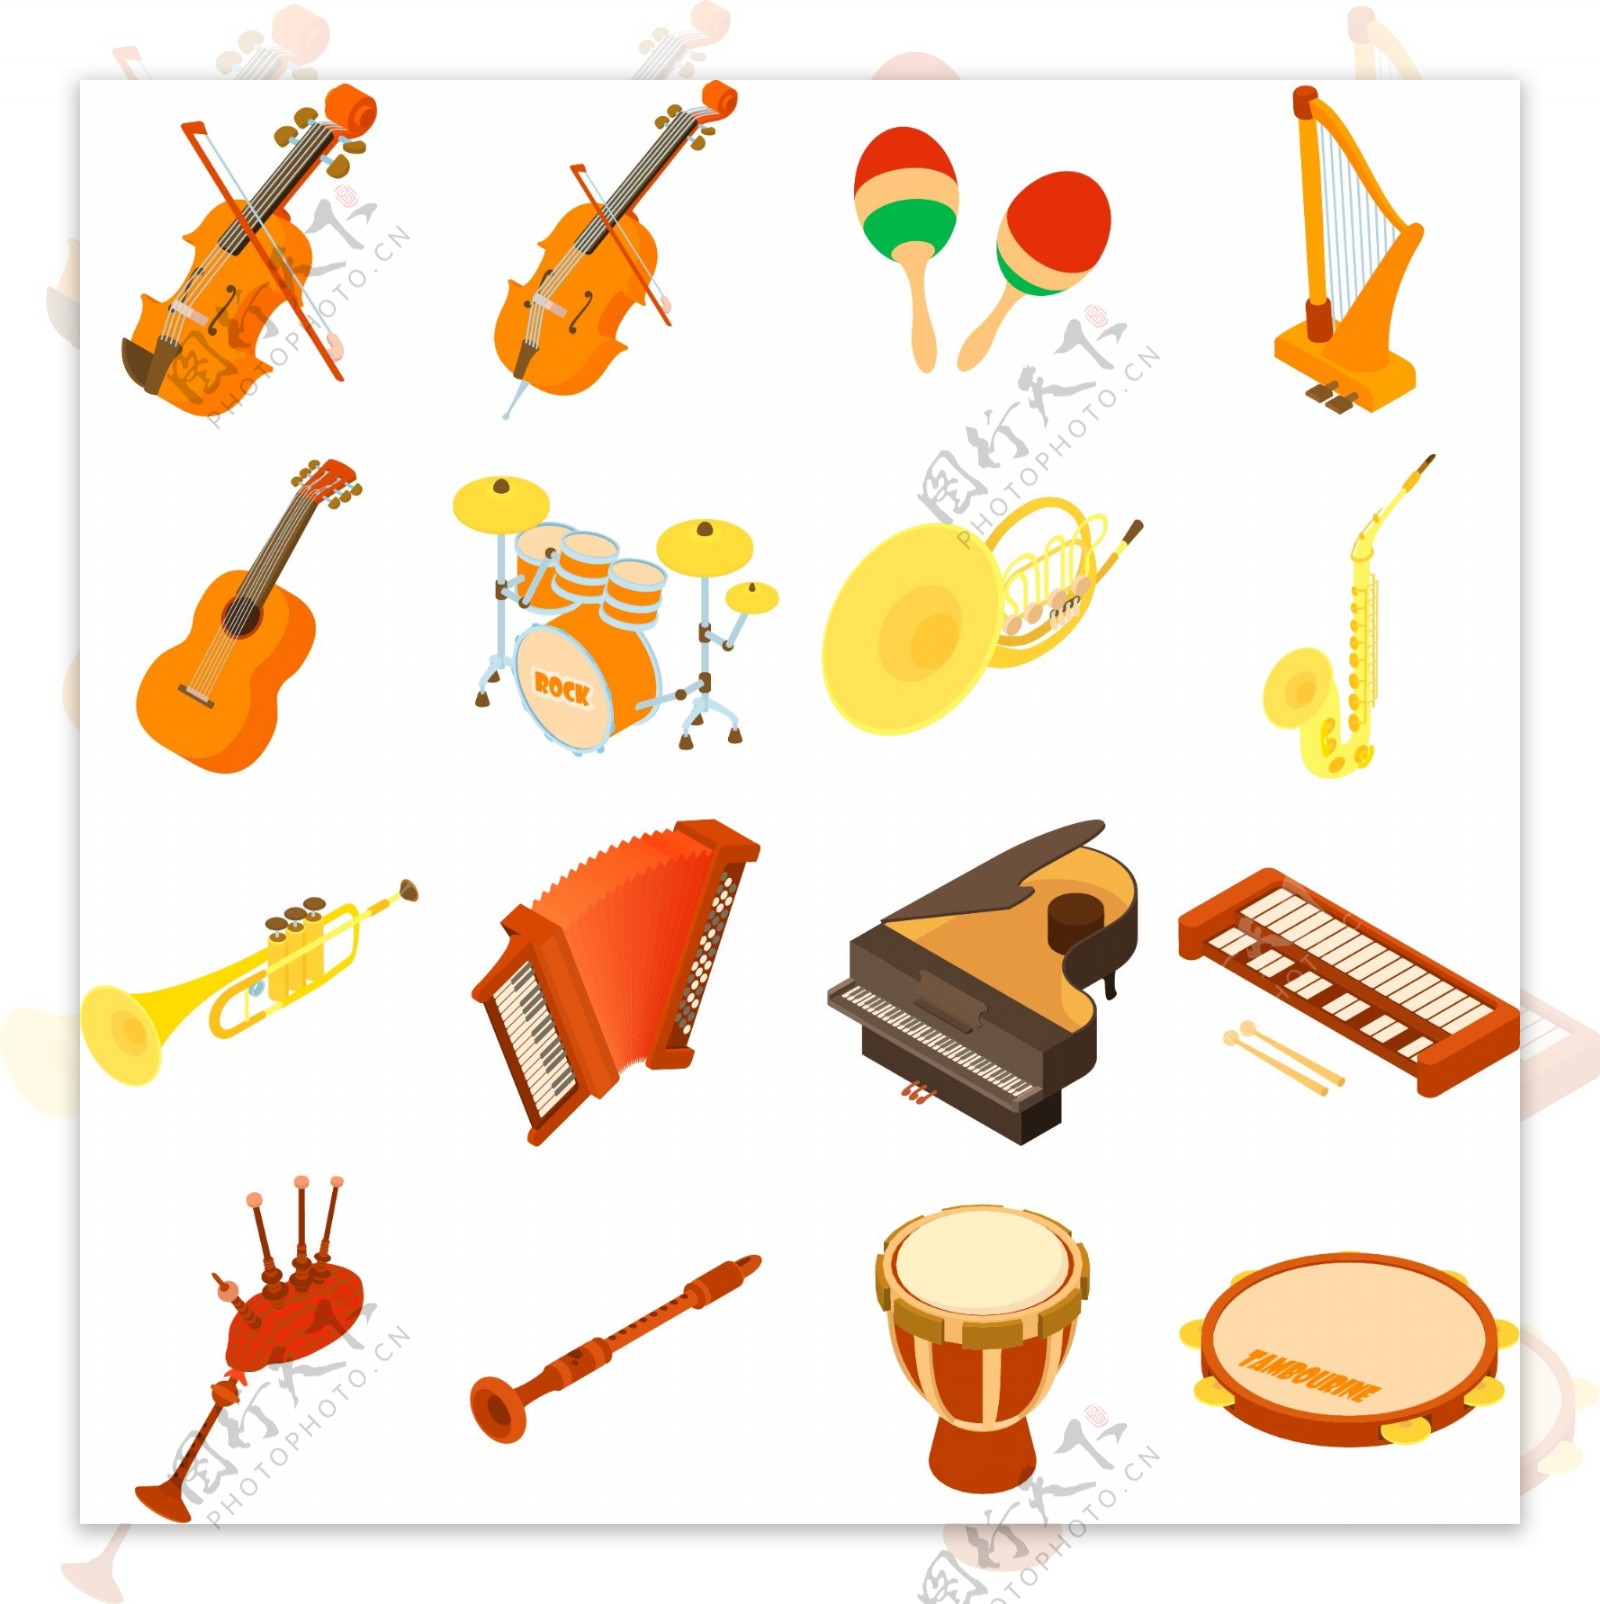 卡通手鼓电子琴小号乐器素材下载-欧莱凯设计网